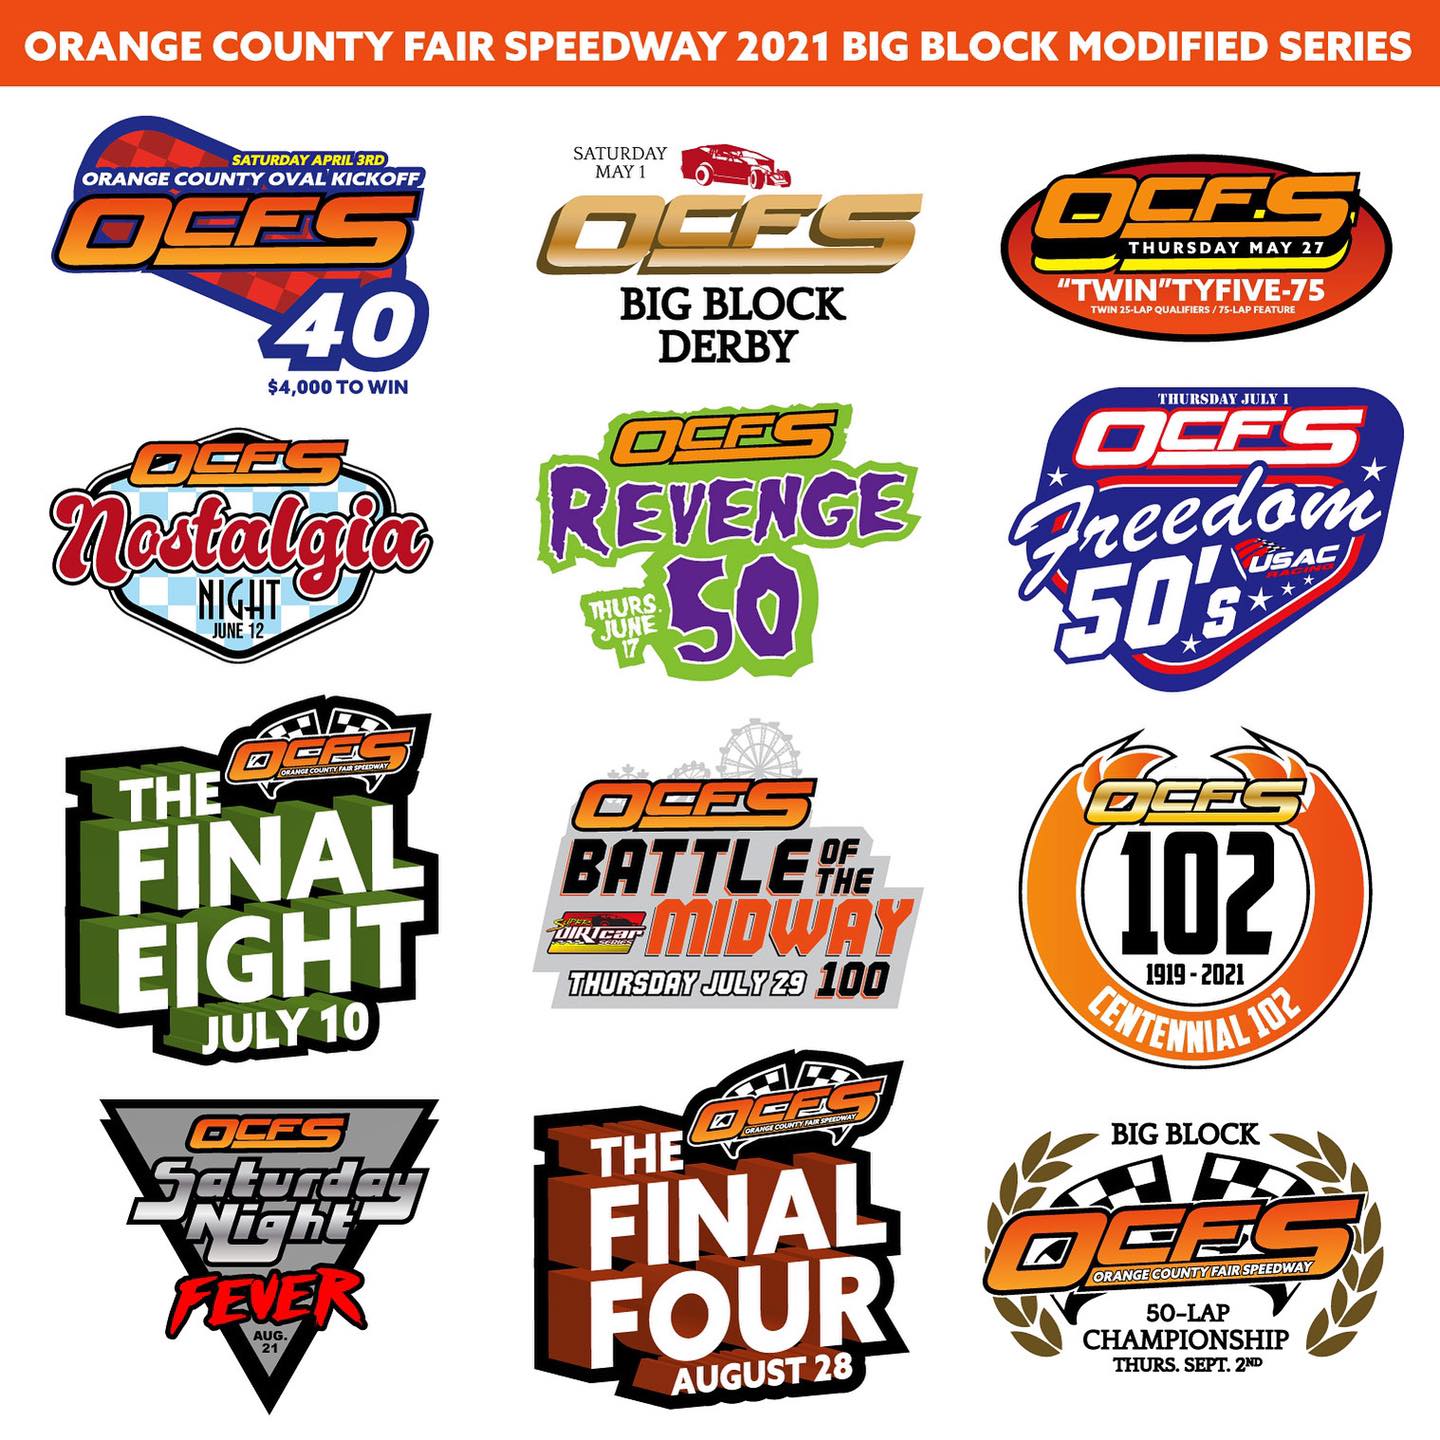 Orange County Fair Speedway Releases 2021 Racing Schedule; Big Blocks